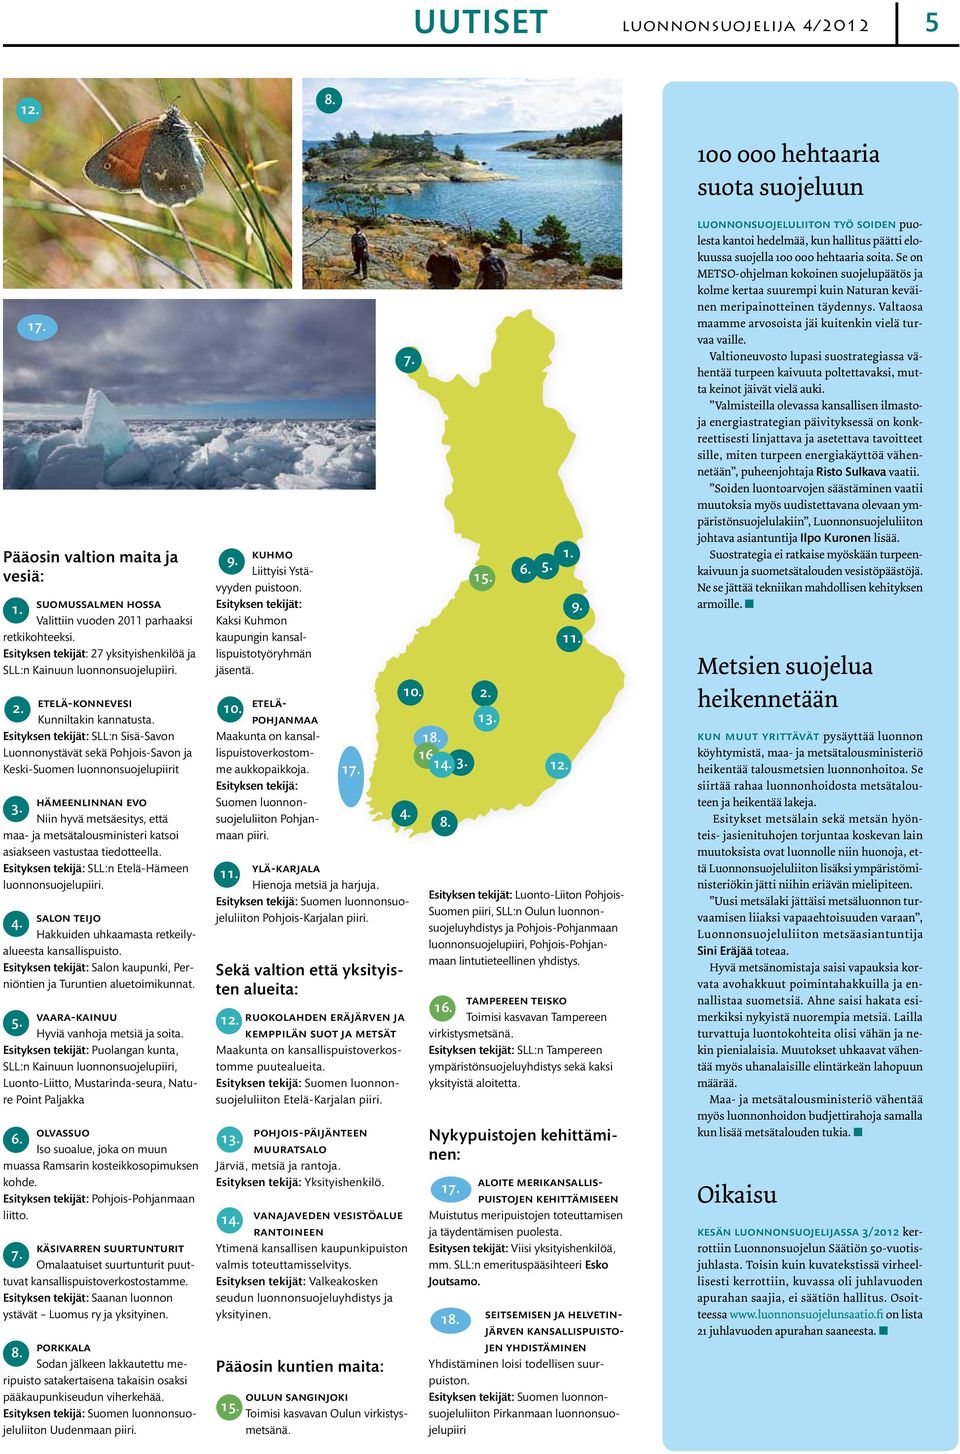 Niin hyvä metsäesitys, että maa- ja metsätalousministeri katsoi asiakseen vastustaa tiedotteella. Esityksen tekijä: SLL:n Etelä-Hämeen luonnonsuojelupiiri. 4.